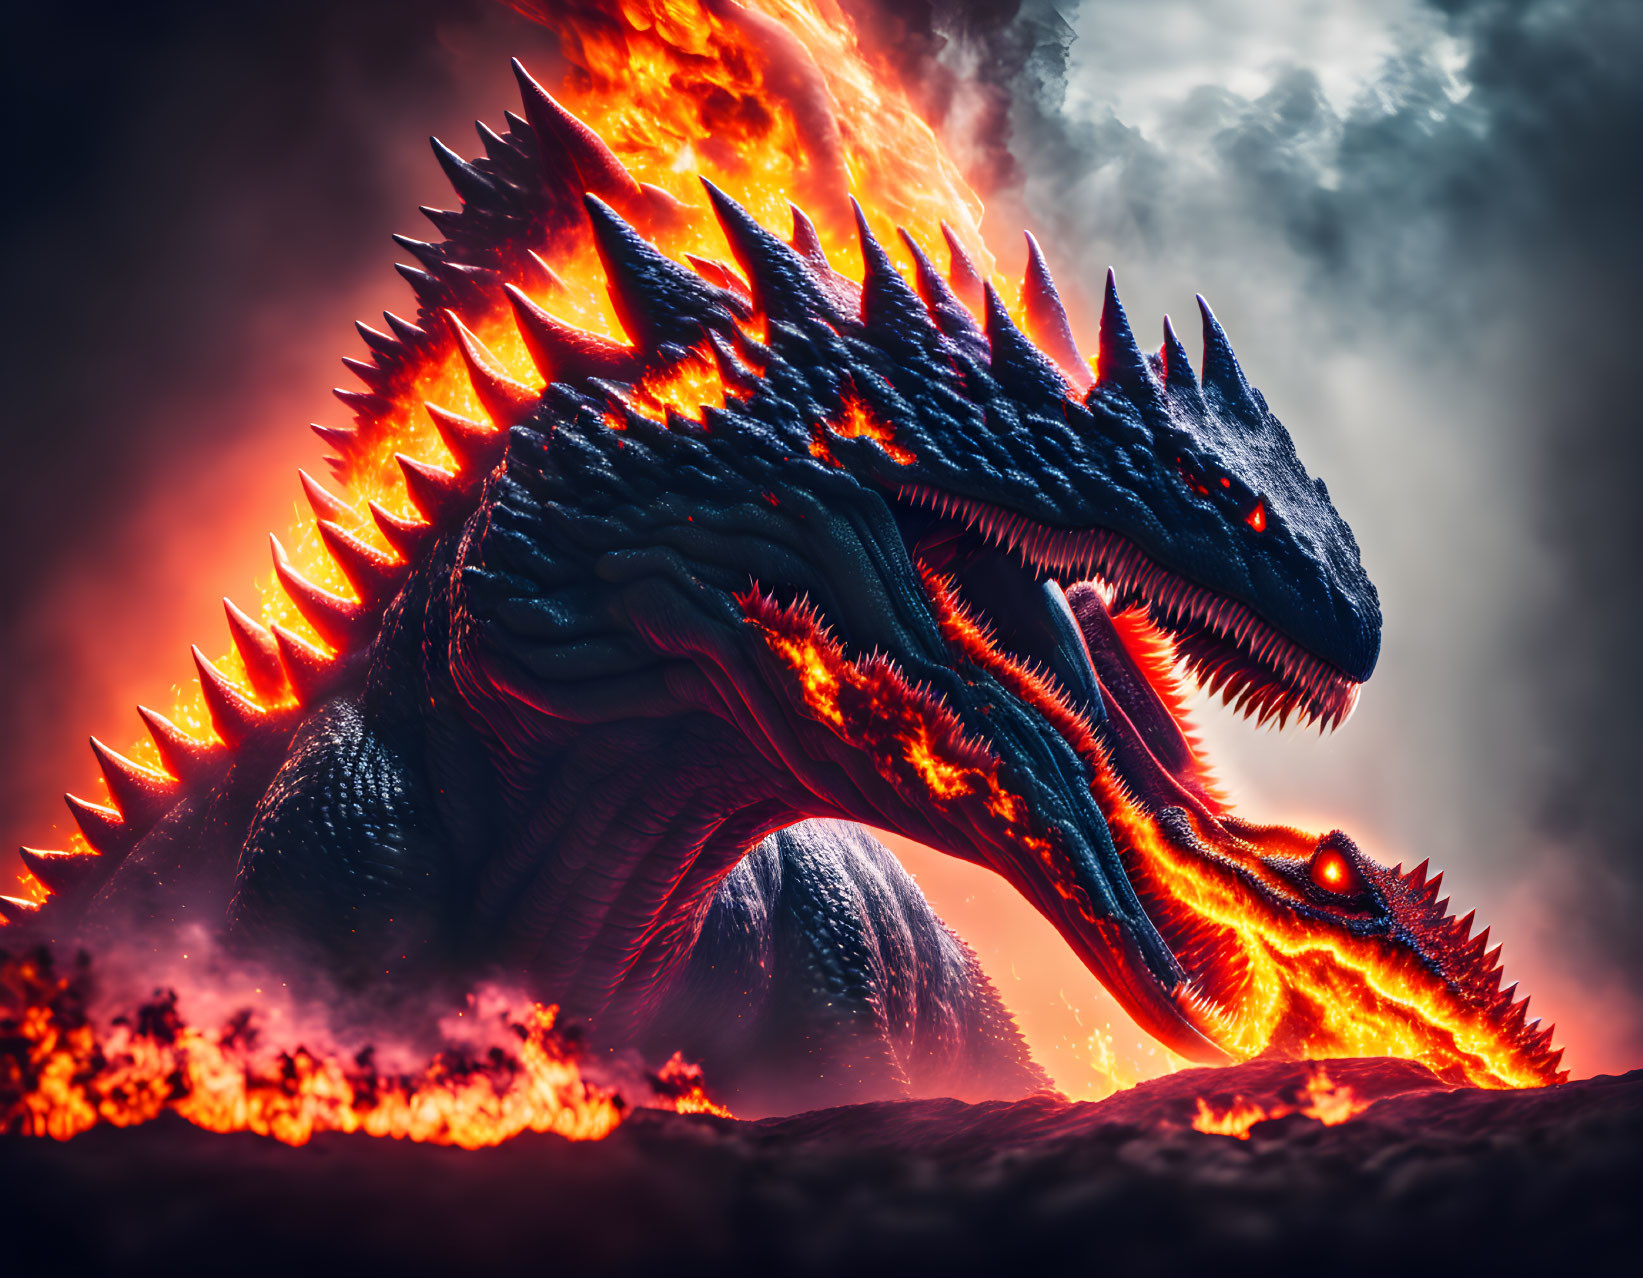 Fire King Godzilla